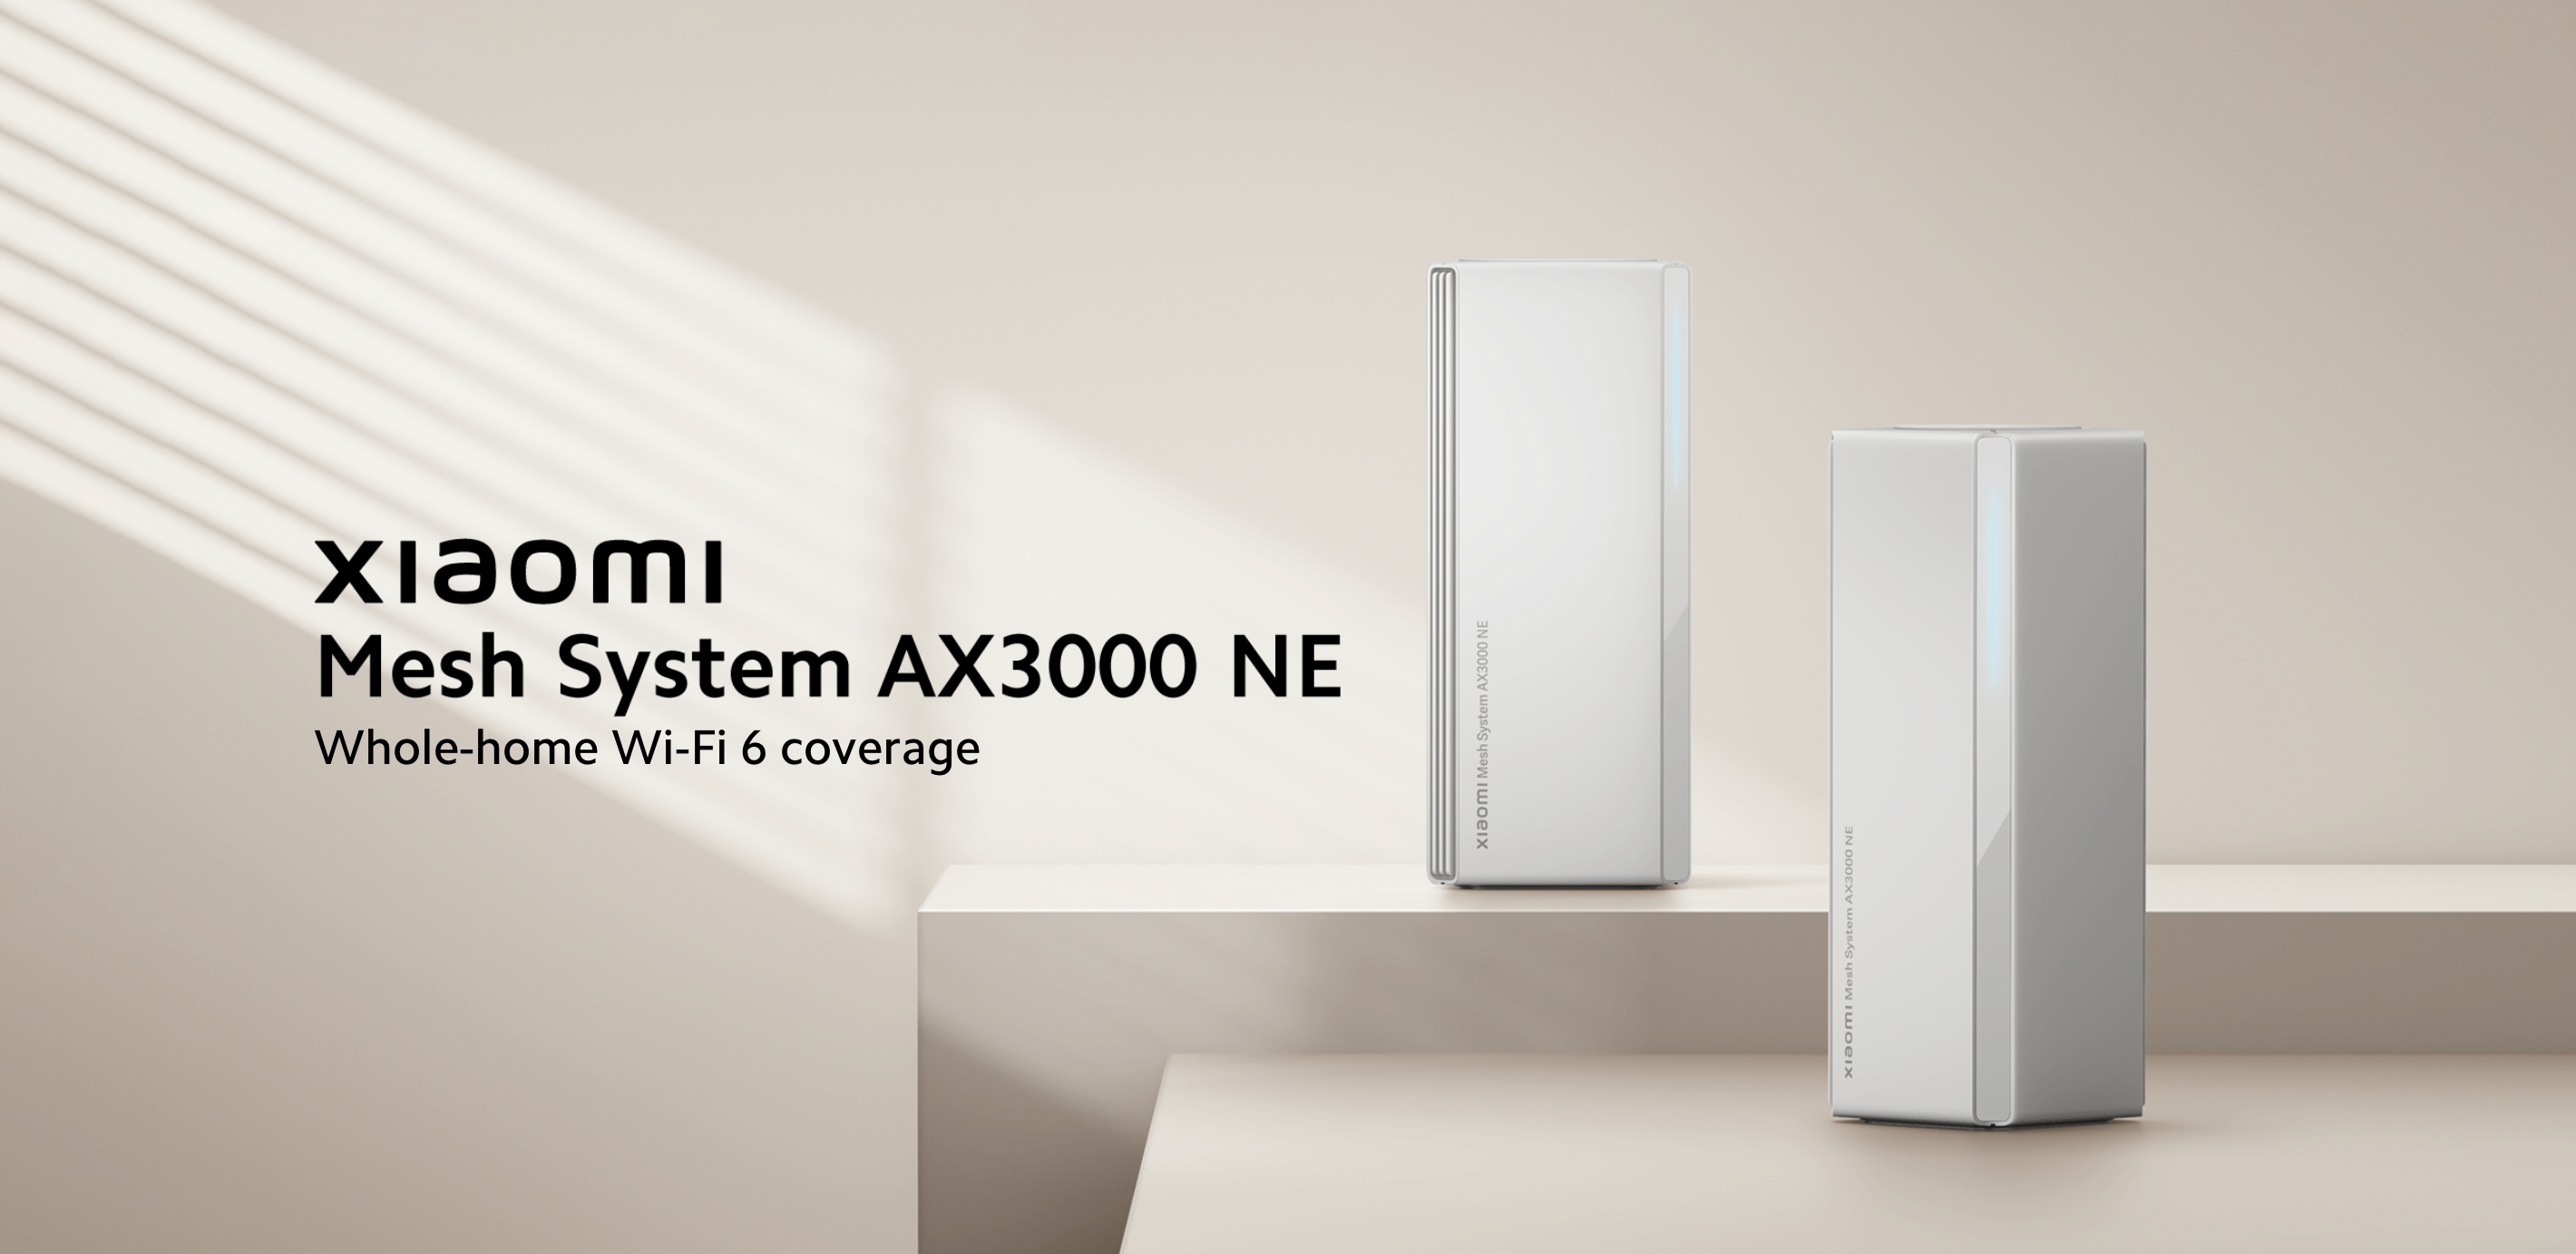 Xiaomi ha introducido en el mercado mundial el sistema AX3000 NE Mesh compatible con WiFi 6 